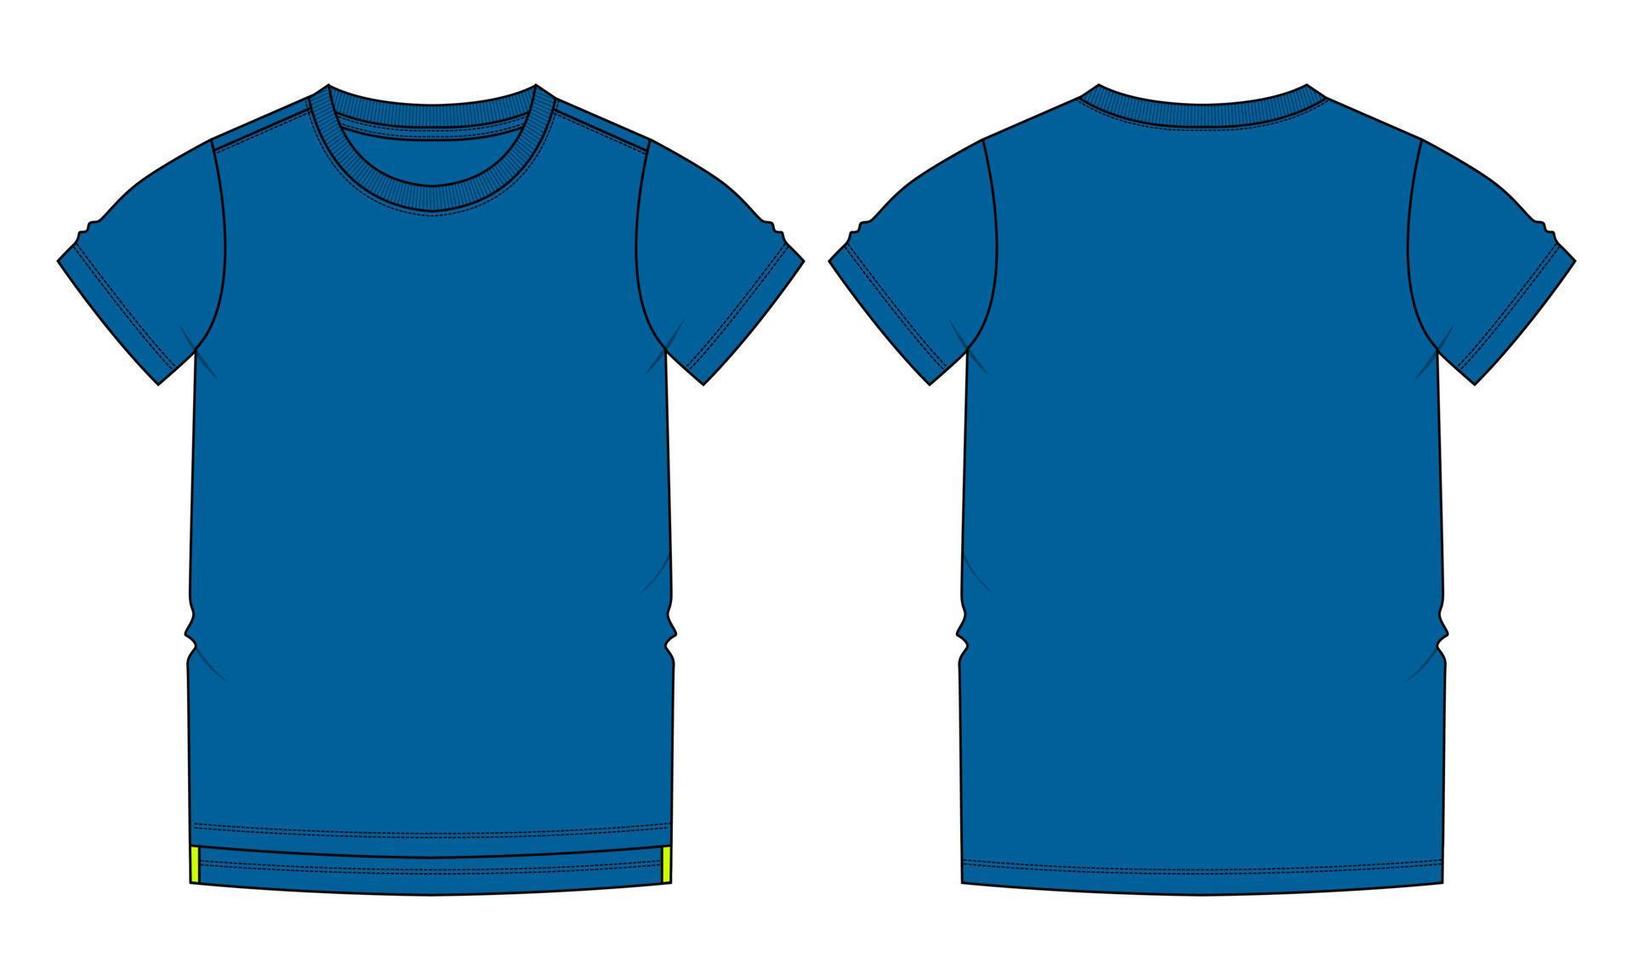 korte mouw t-shirt vector illustratie blauwe kleur sjabloon voor- en achterkant weergaven